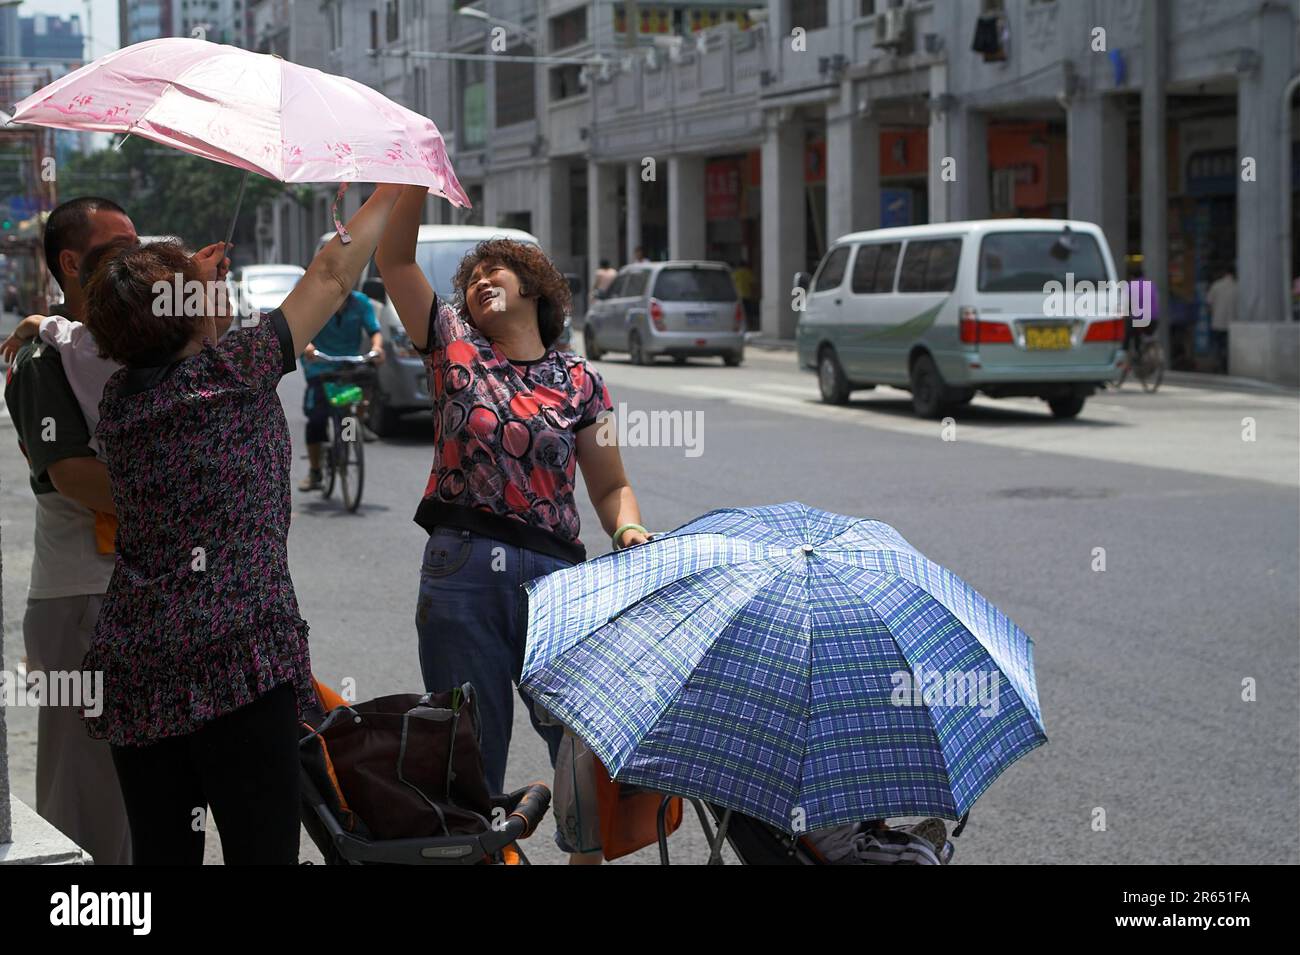 广州市 中國 Guangzhou, China; Chinese women spread an umbrella against the sun; Chinesinnen breiten einen Regenschirm gegen die Sonne aus 中國婦女撐傘防曬 Stock Photo